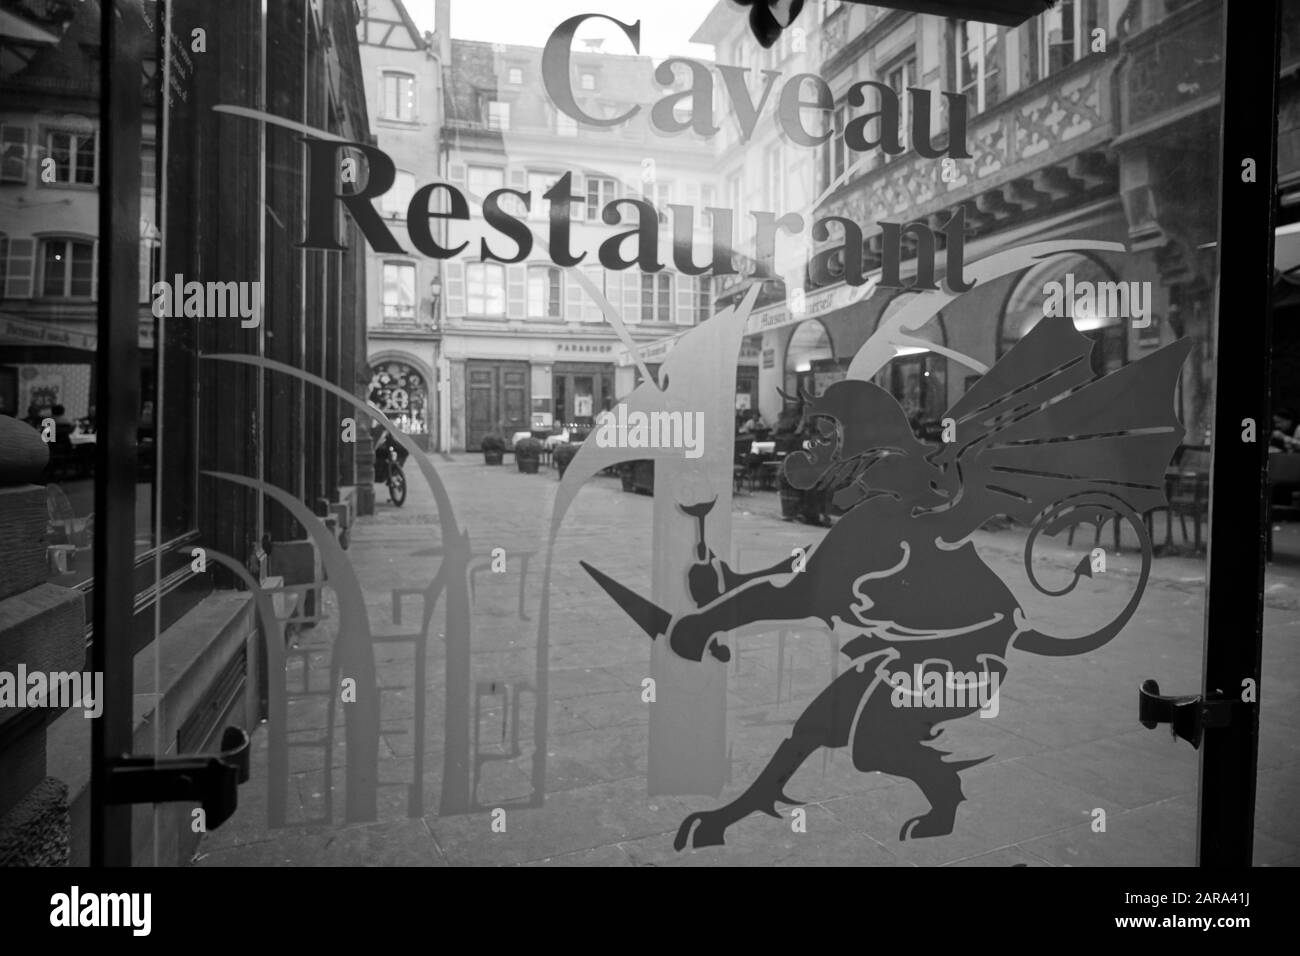 Caveau Gurtlerhoft ristorante, finestra di vetro, Strasburgo, Alsazia, Francia, Europa Foto Stock